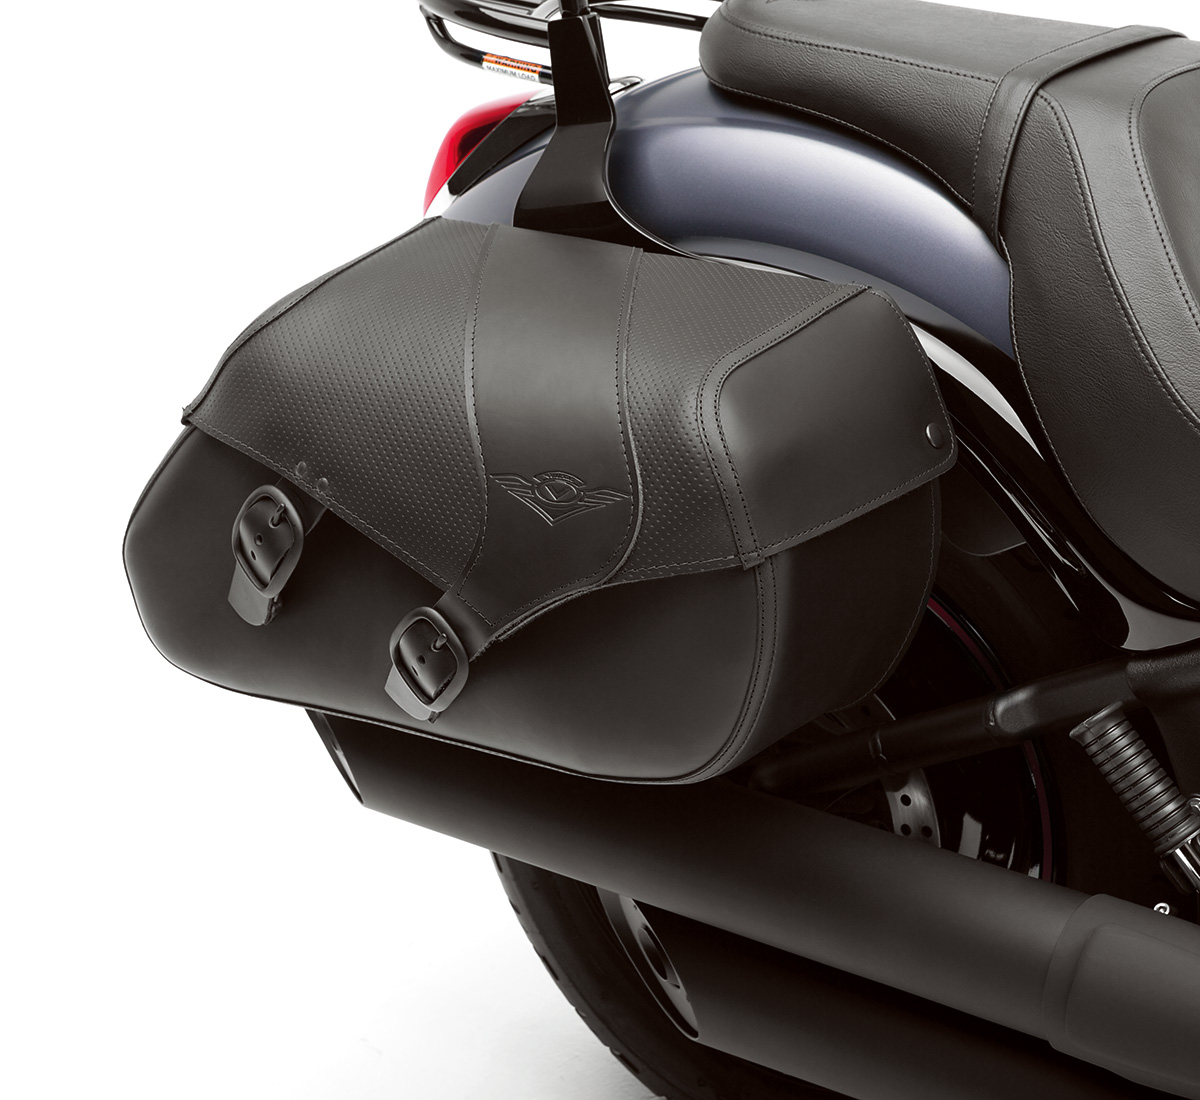 2016 VULCAN® 900 CUSTOM Cruisers Motorcycle by Kawasaki